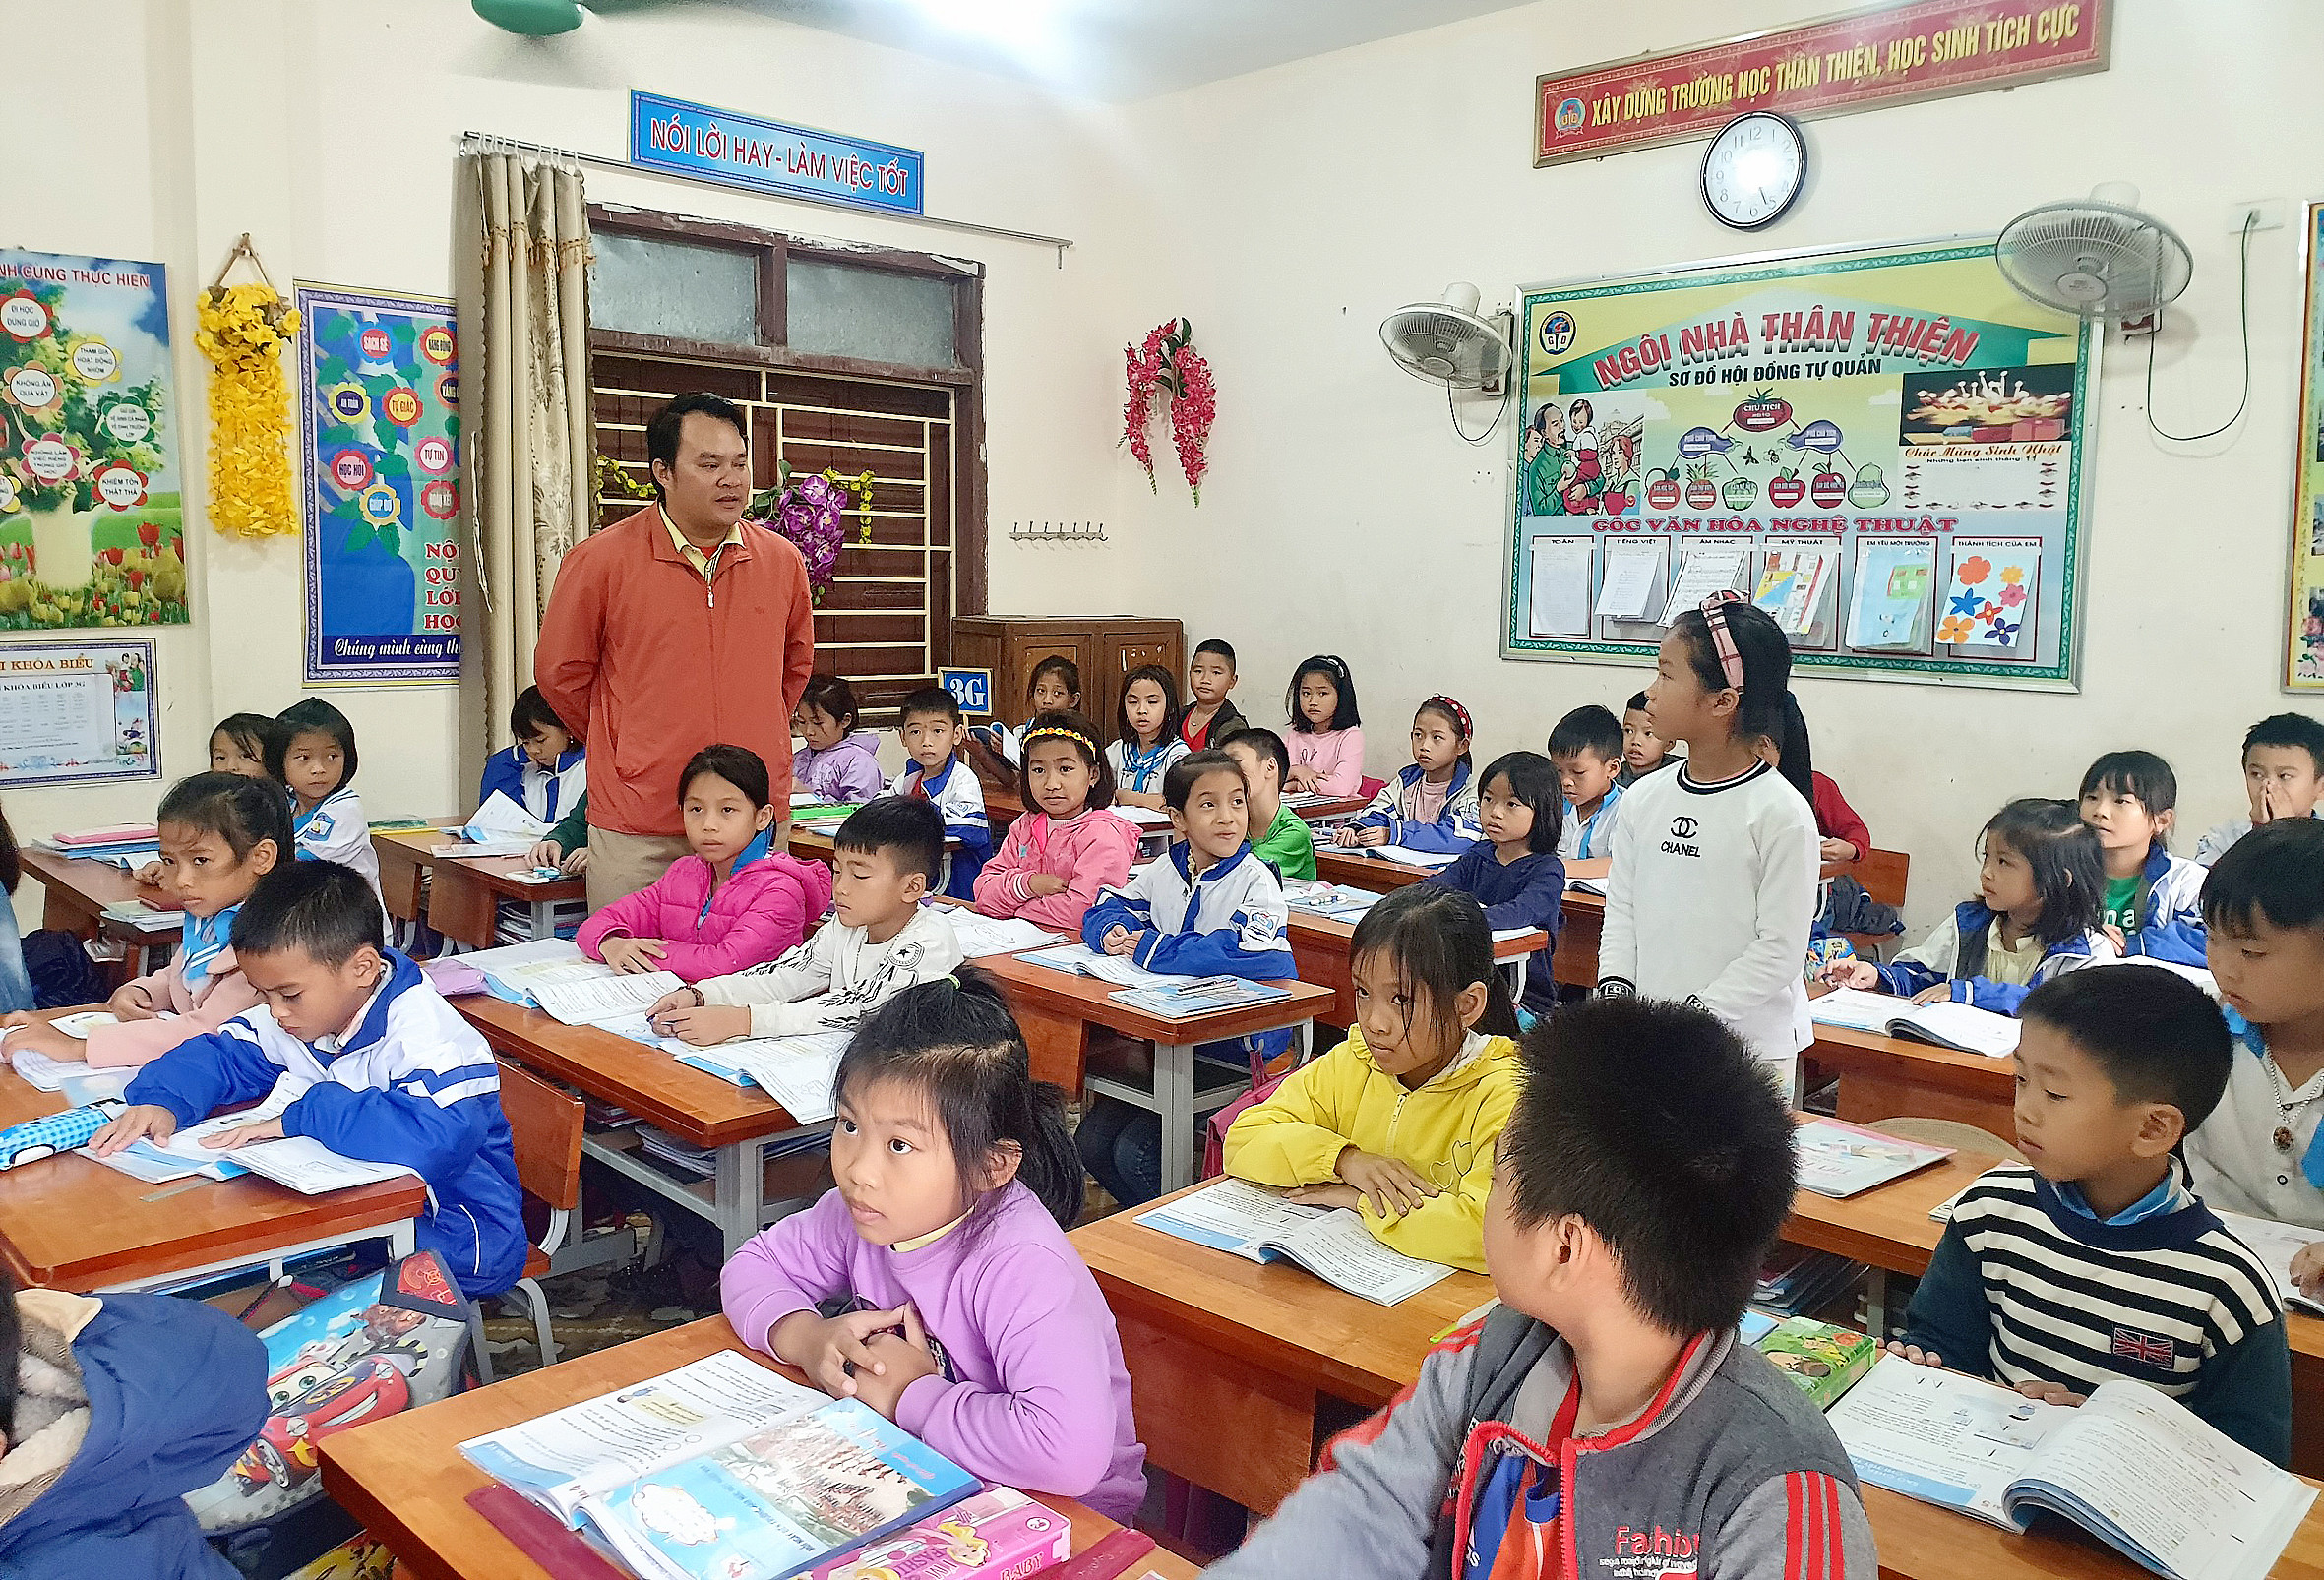 Một thầy giáo đã dạy hợp đồng hơn 10 năm ở huyện Diễn Châu nhưng lại không có cơ hội tuyển dụng đặc cách vì chỉ là giáo viên hợp đồng trường. Ảnh: Mỹ Hà